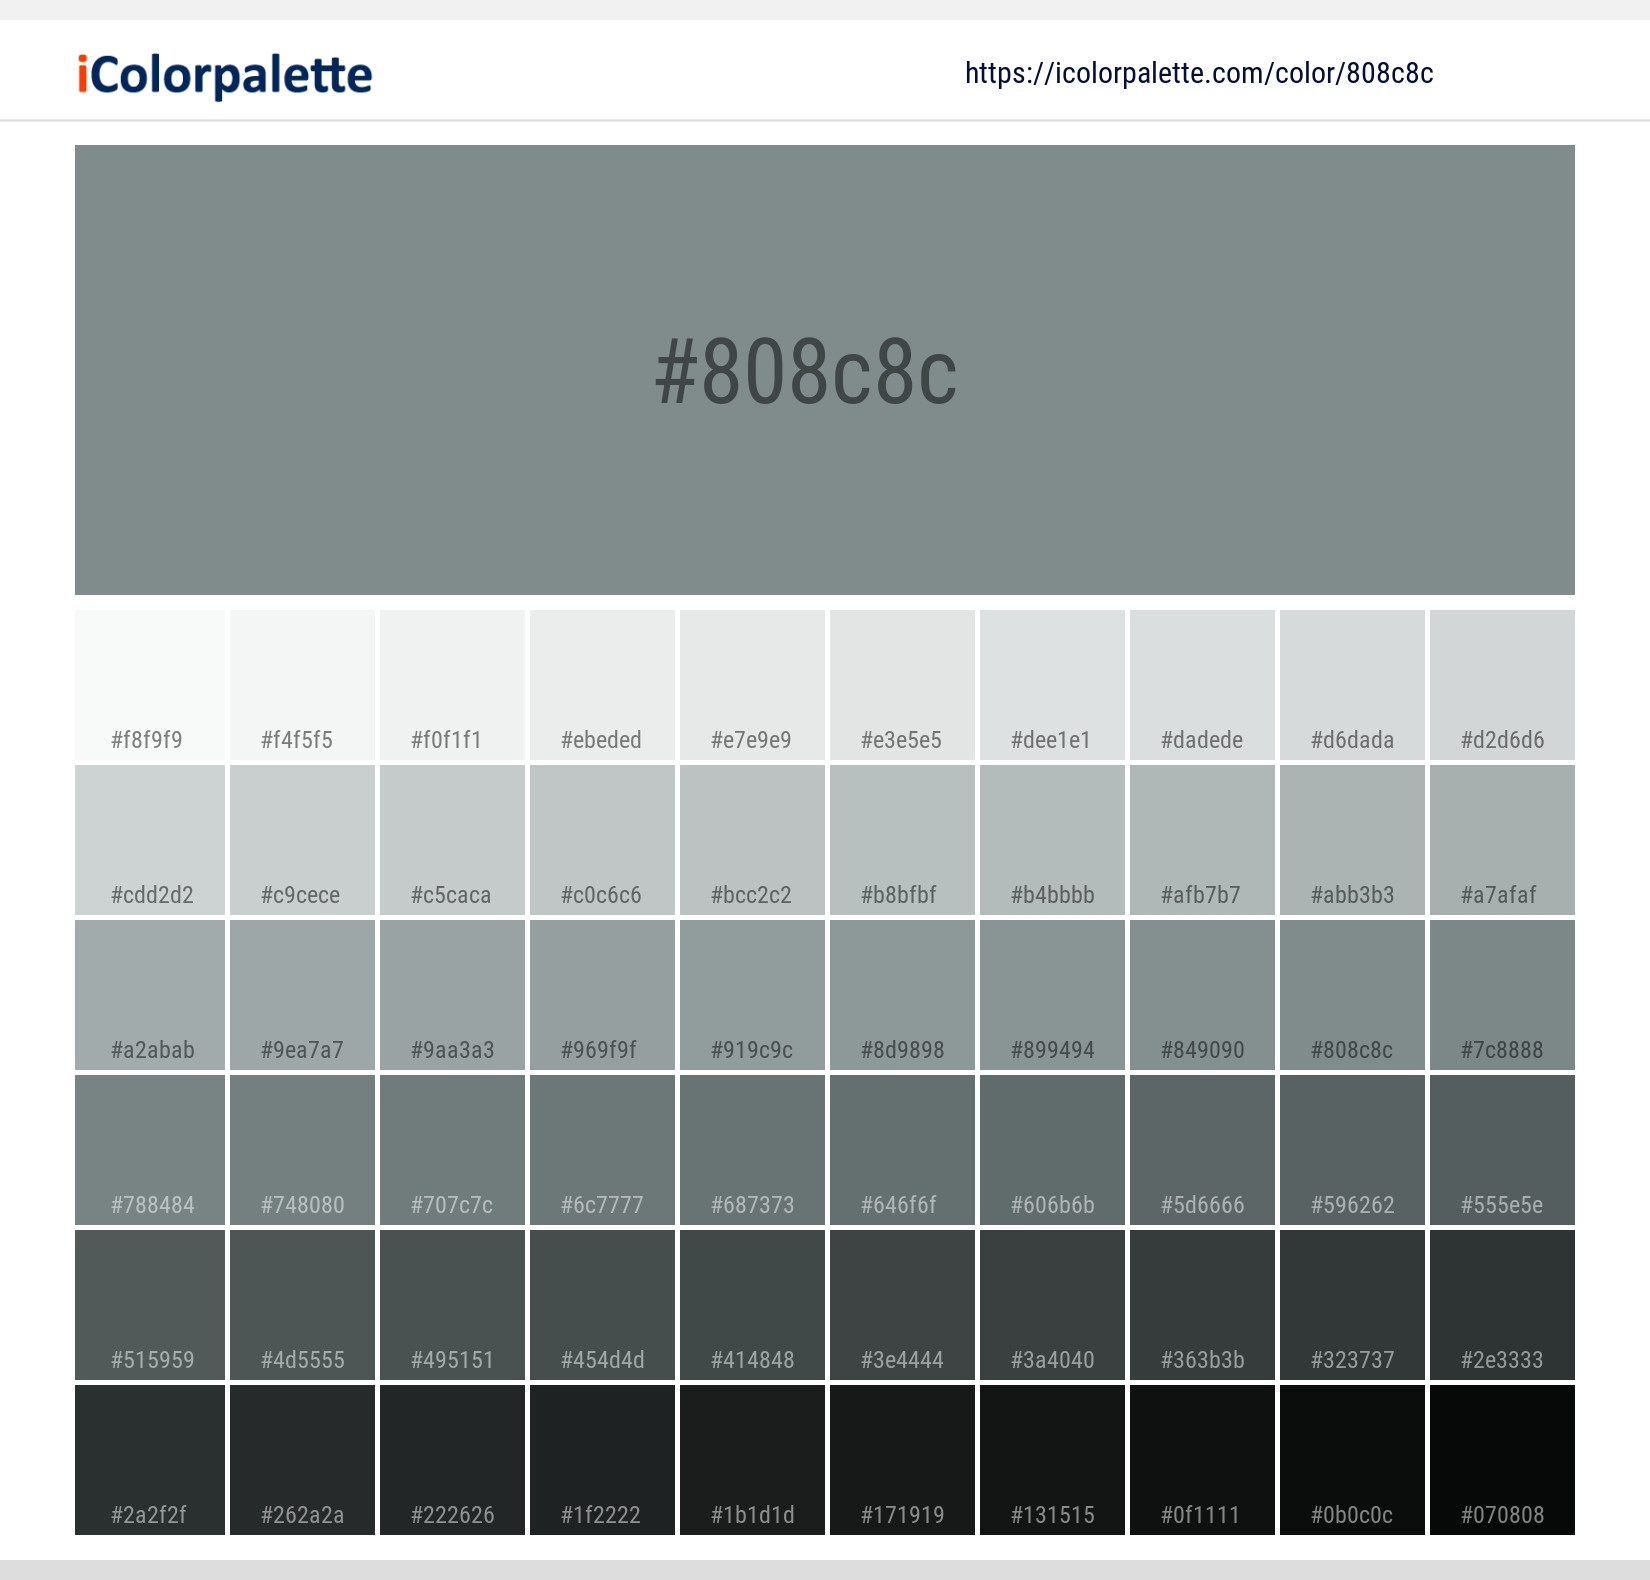 Gunmetal Grey Shades Color Palette  Grey color palette, Grey color scheme,  Color schemes